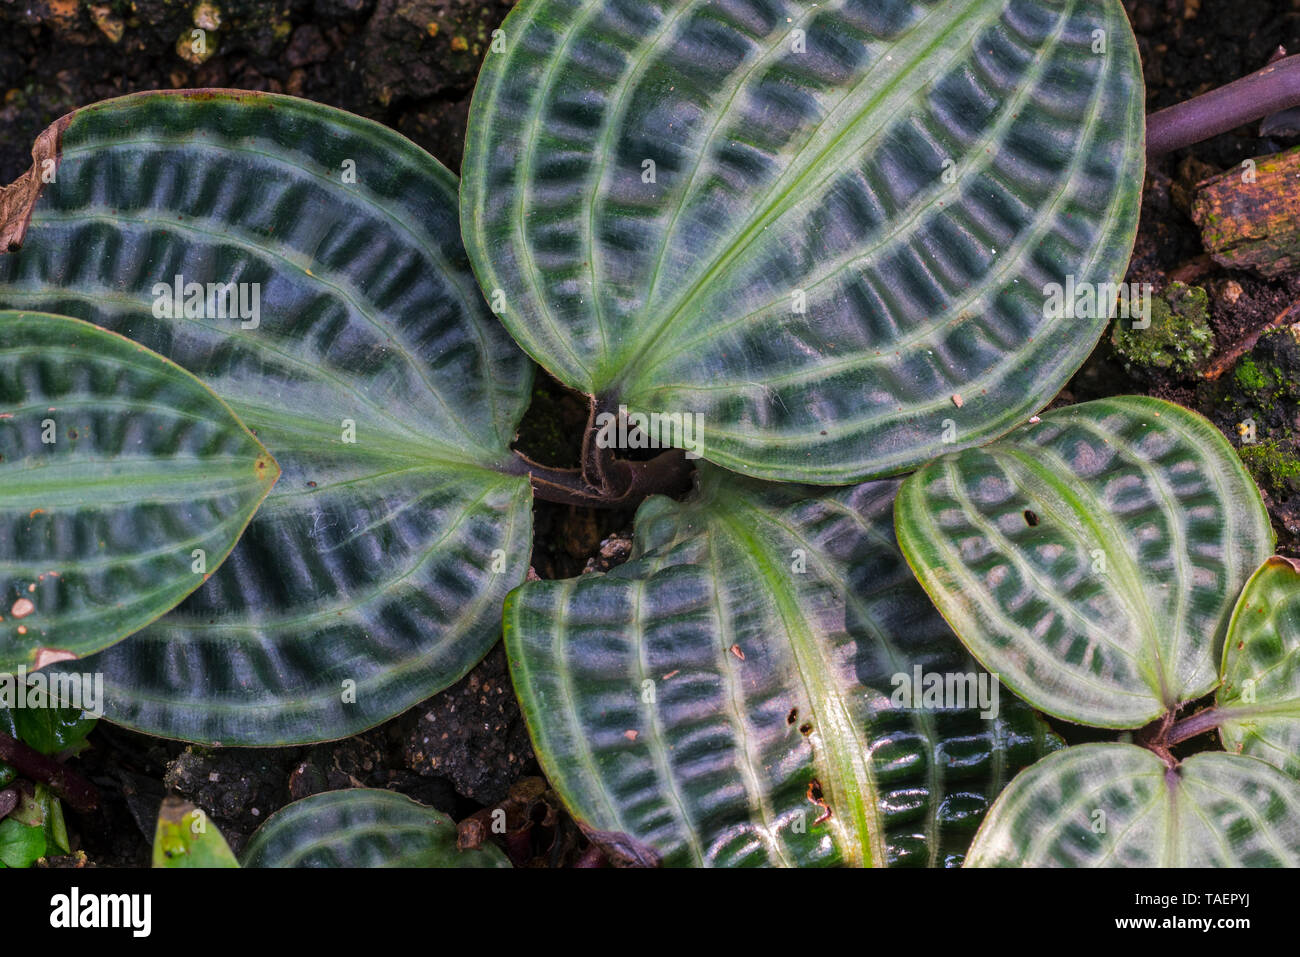 Seersucker plant (Geogenanthus poeppigii), native to Amazonia Stock Photo